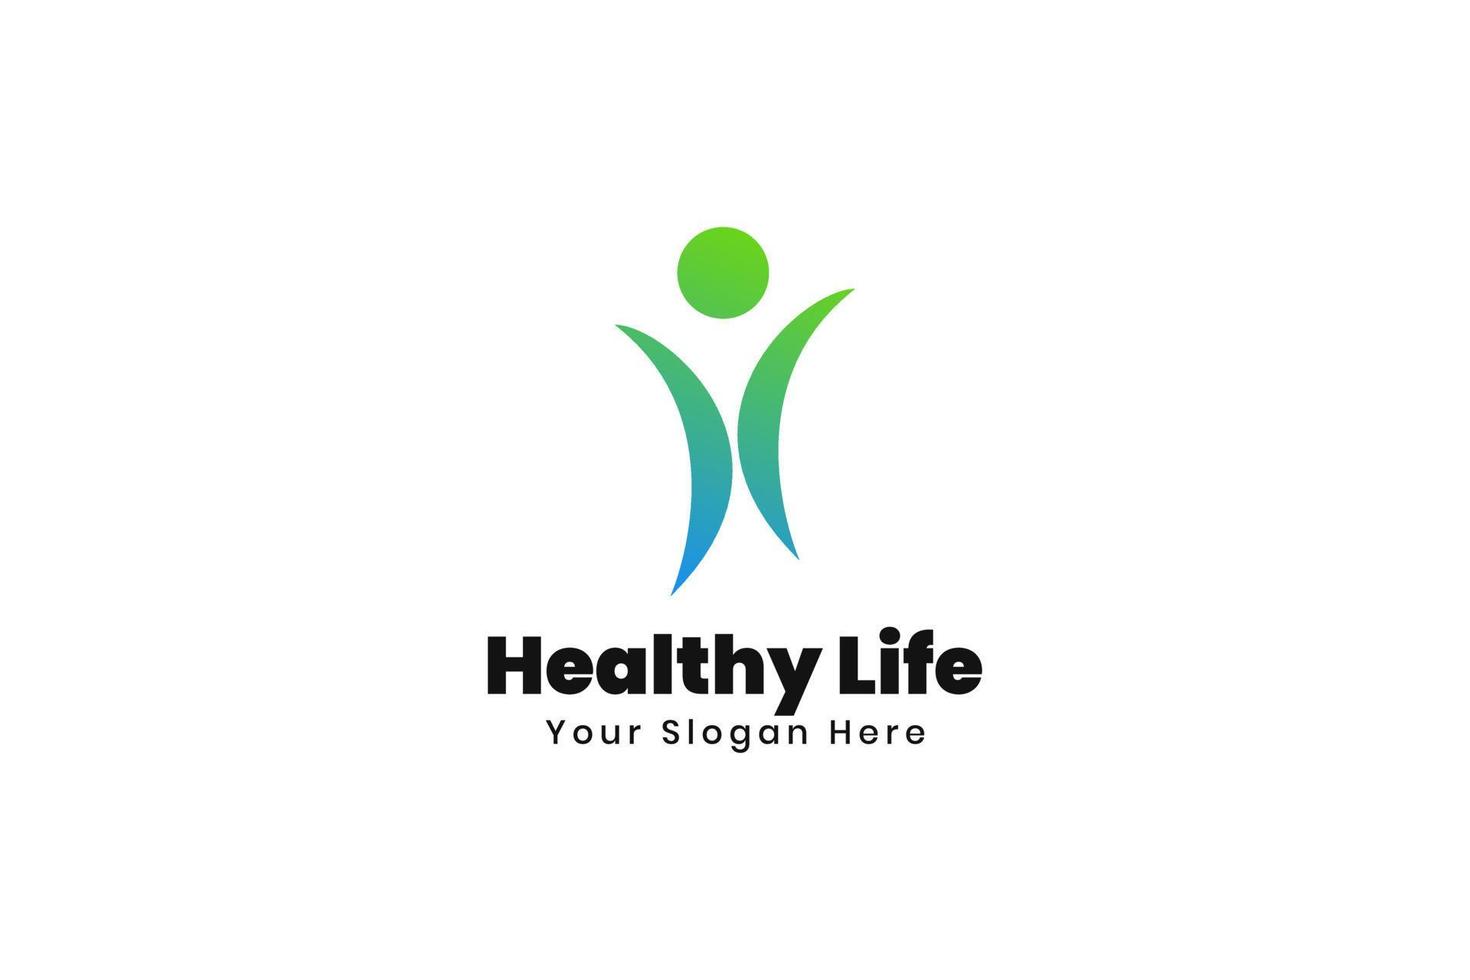 Healthy life people logo design vector